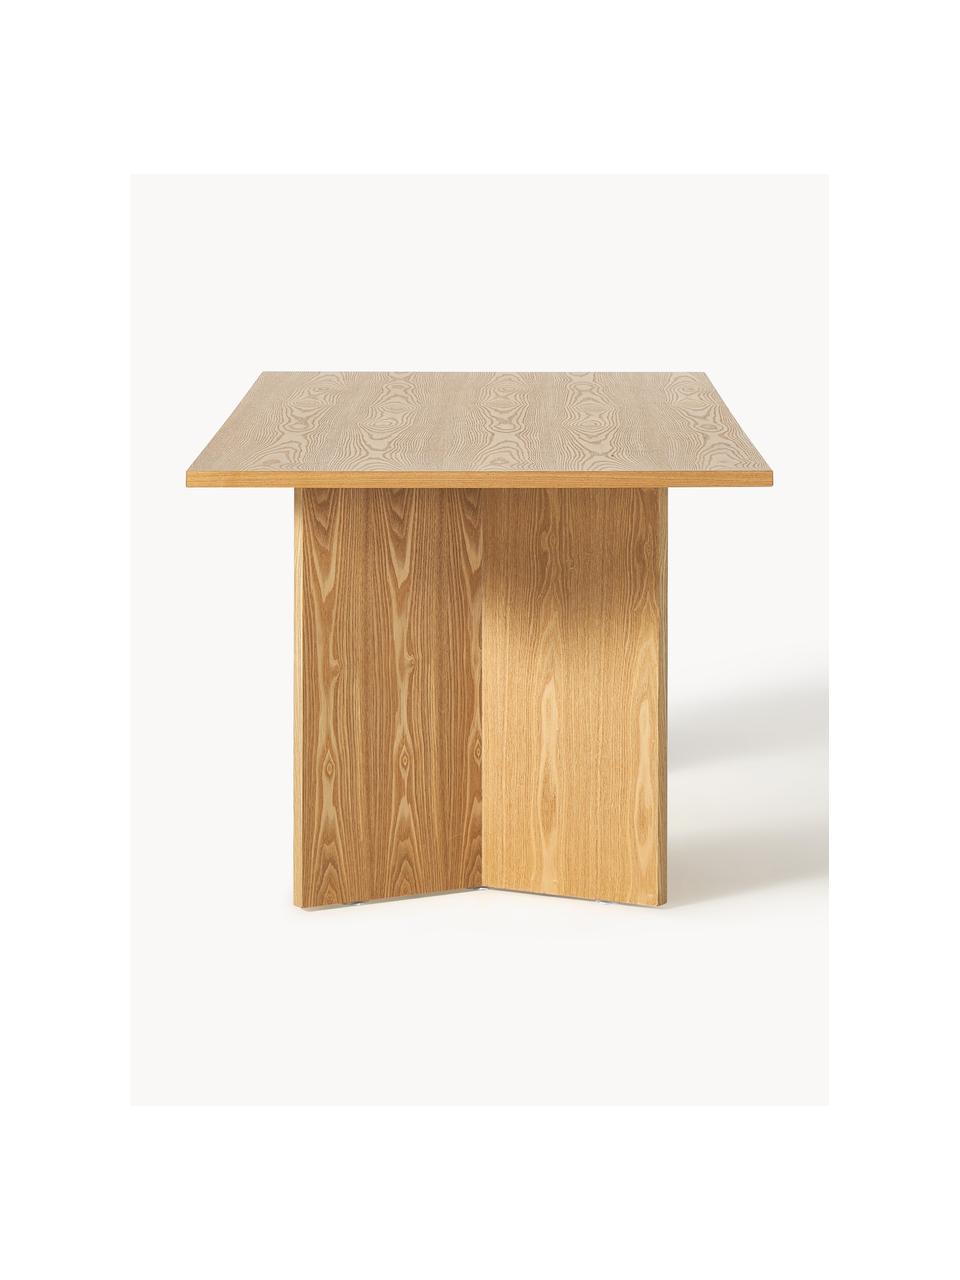 Table en bois Toni, 200 x 90 cm, MDF avec placage en frêne, laqué, certifié FSC, Bois de frêne, laqué, Ø 200 x haut. 90 cm